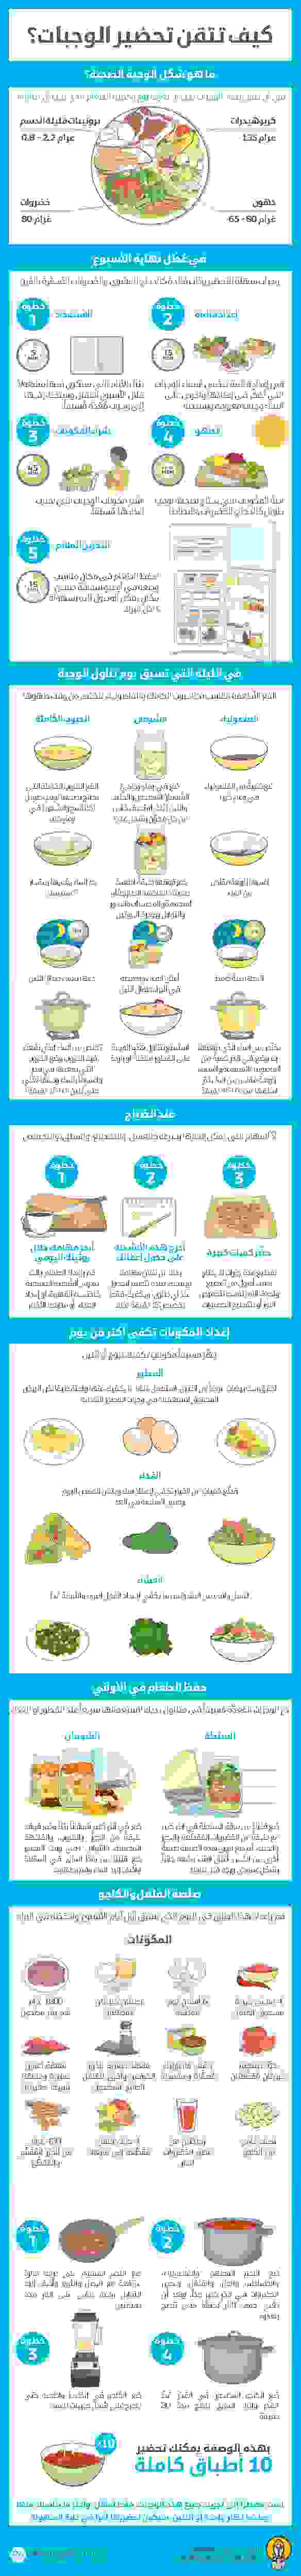 7 استراتيجيات لتناول الطعام الصحي